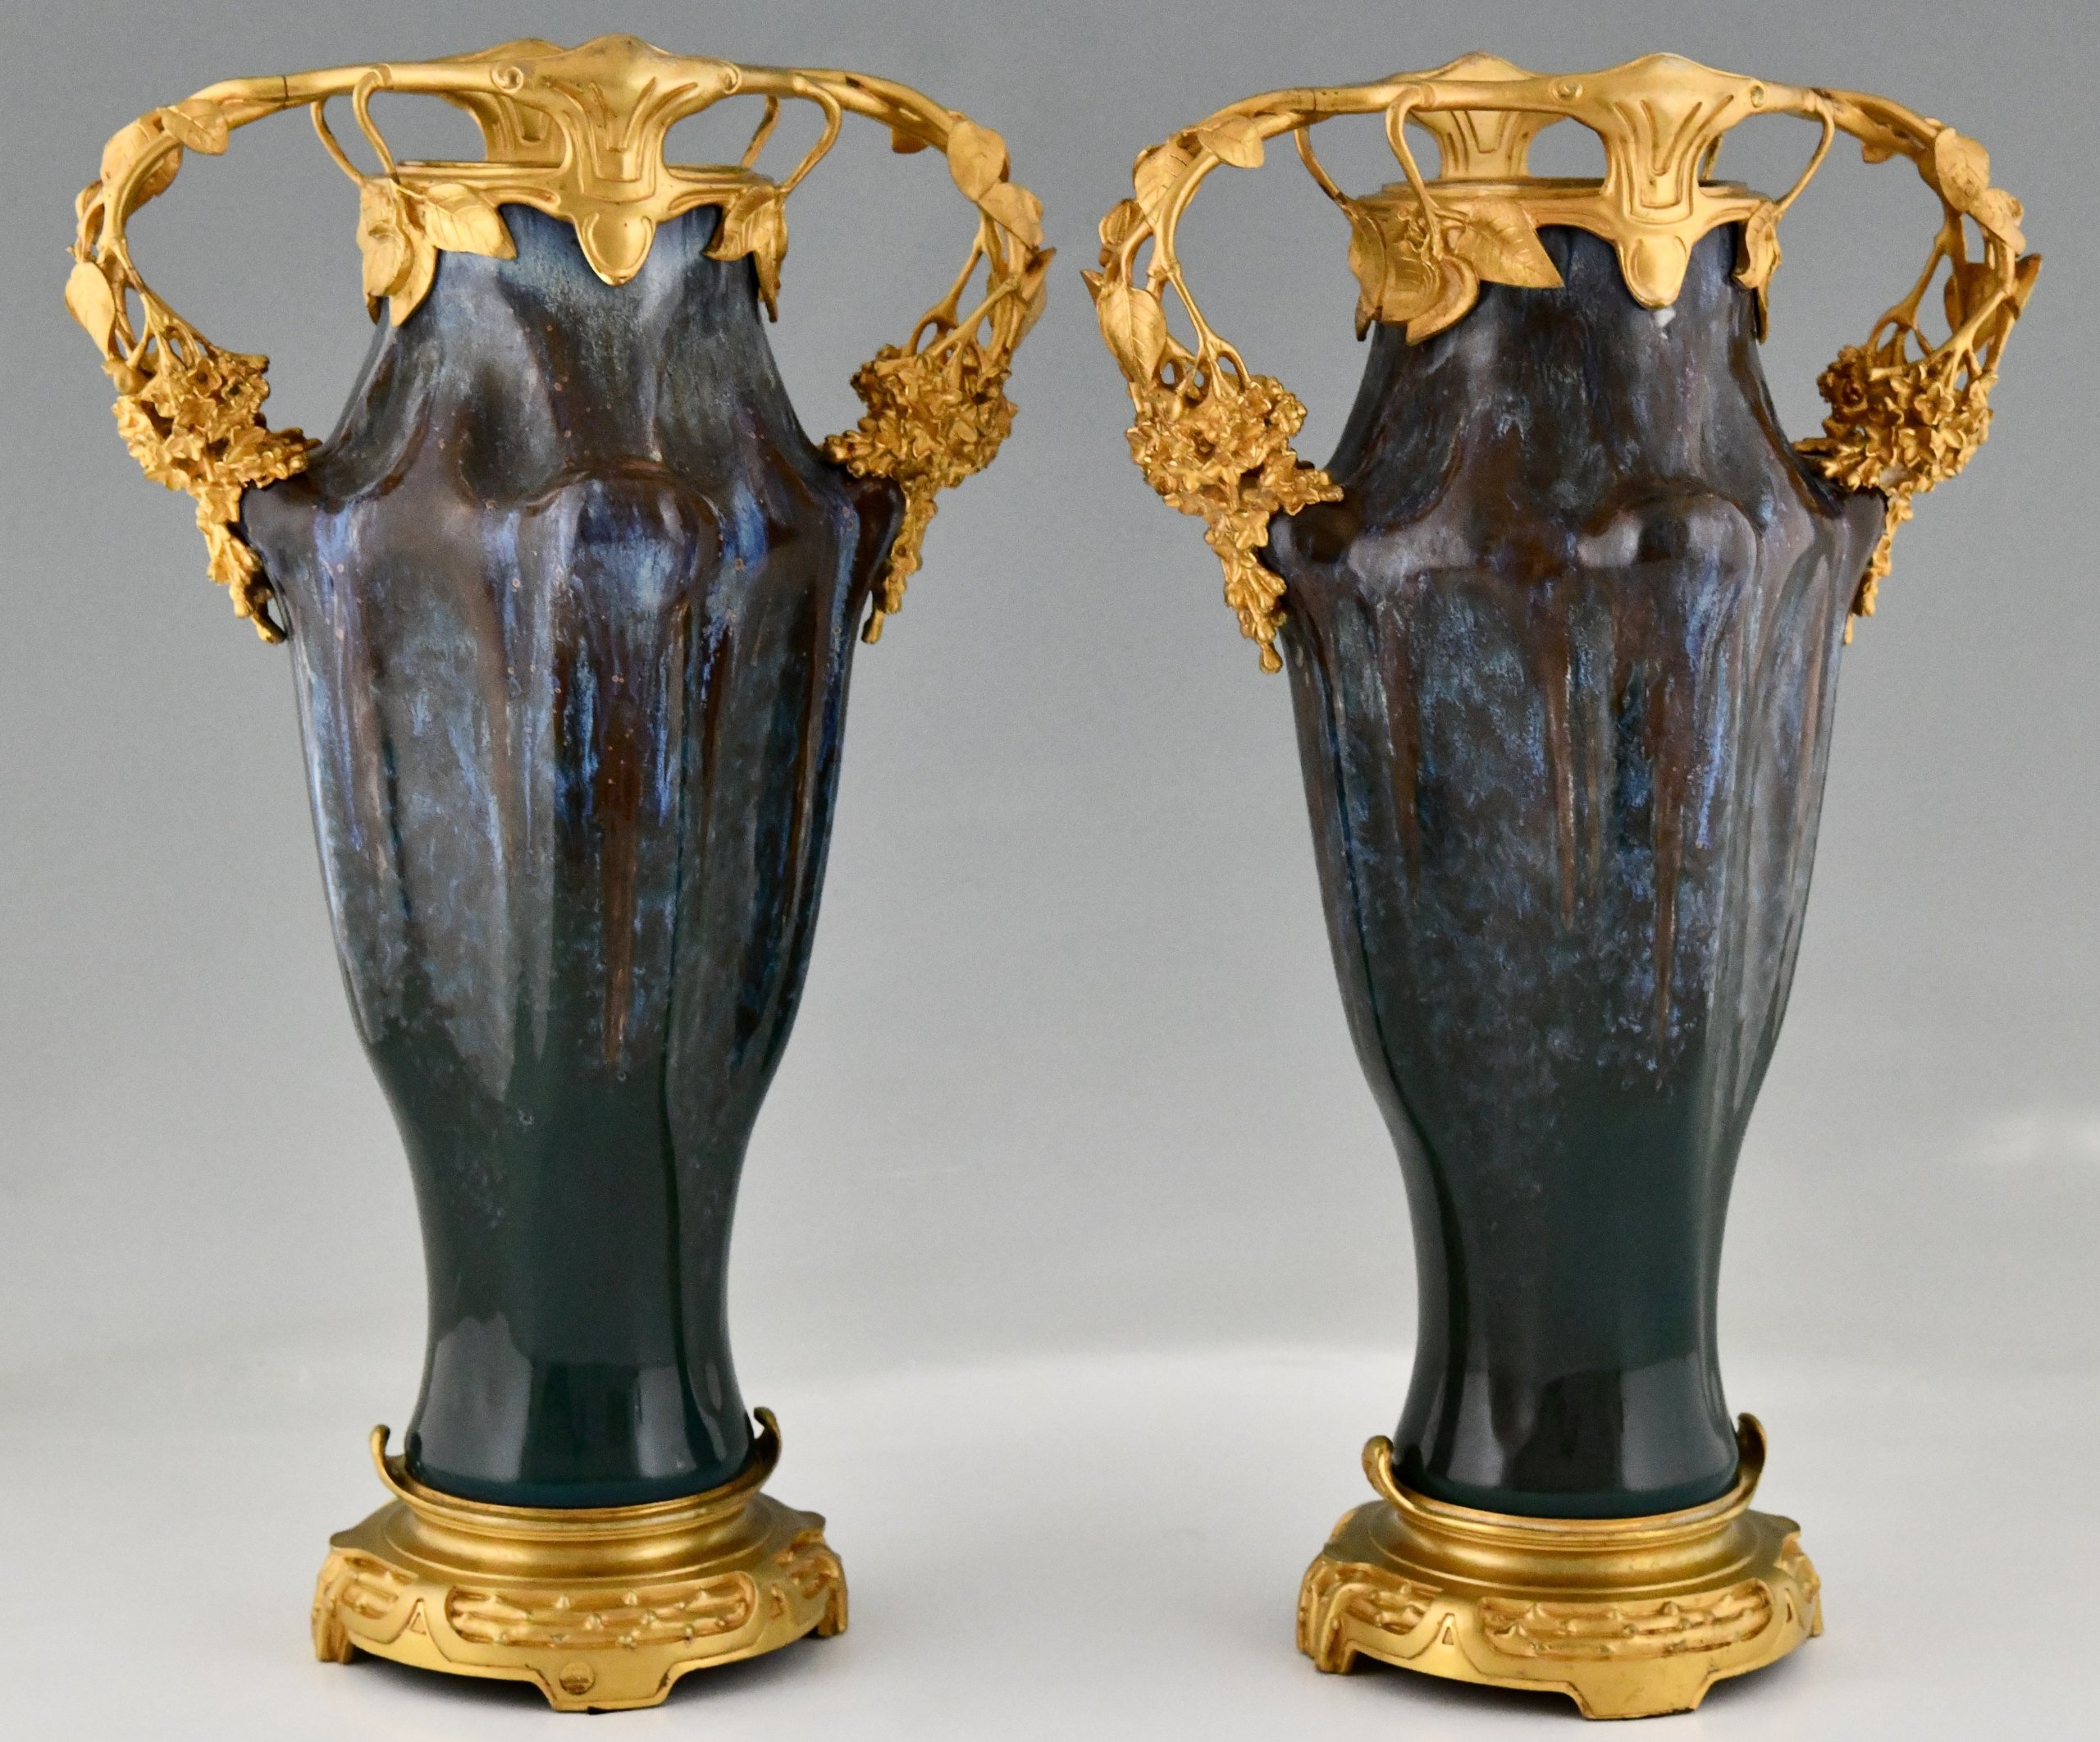 Pair of Art Nouveau ceramic and bronze vases.